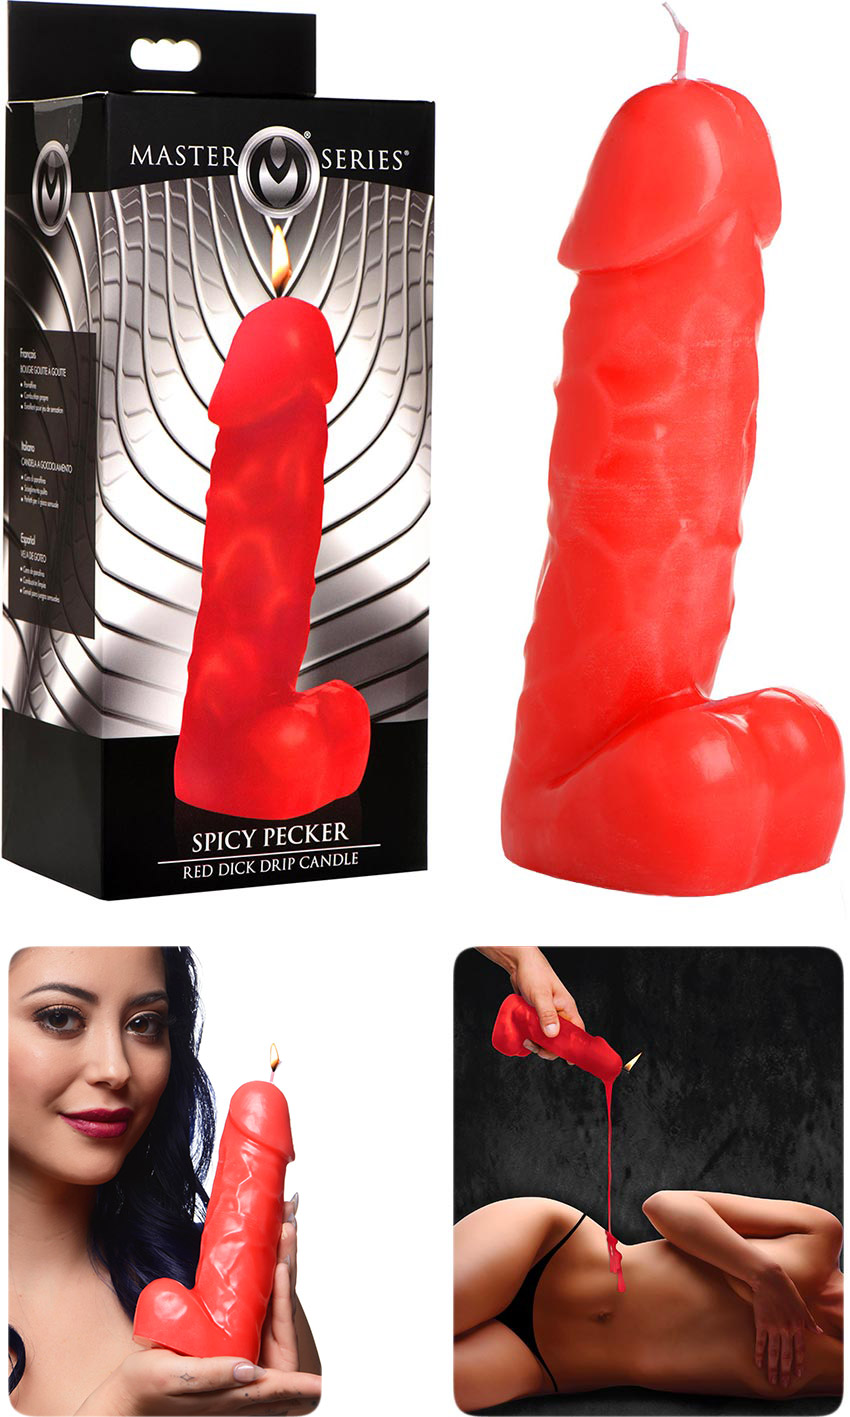 Candela a forma di pene per giochi BDSM Master Series Spicy Pecker